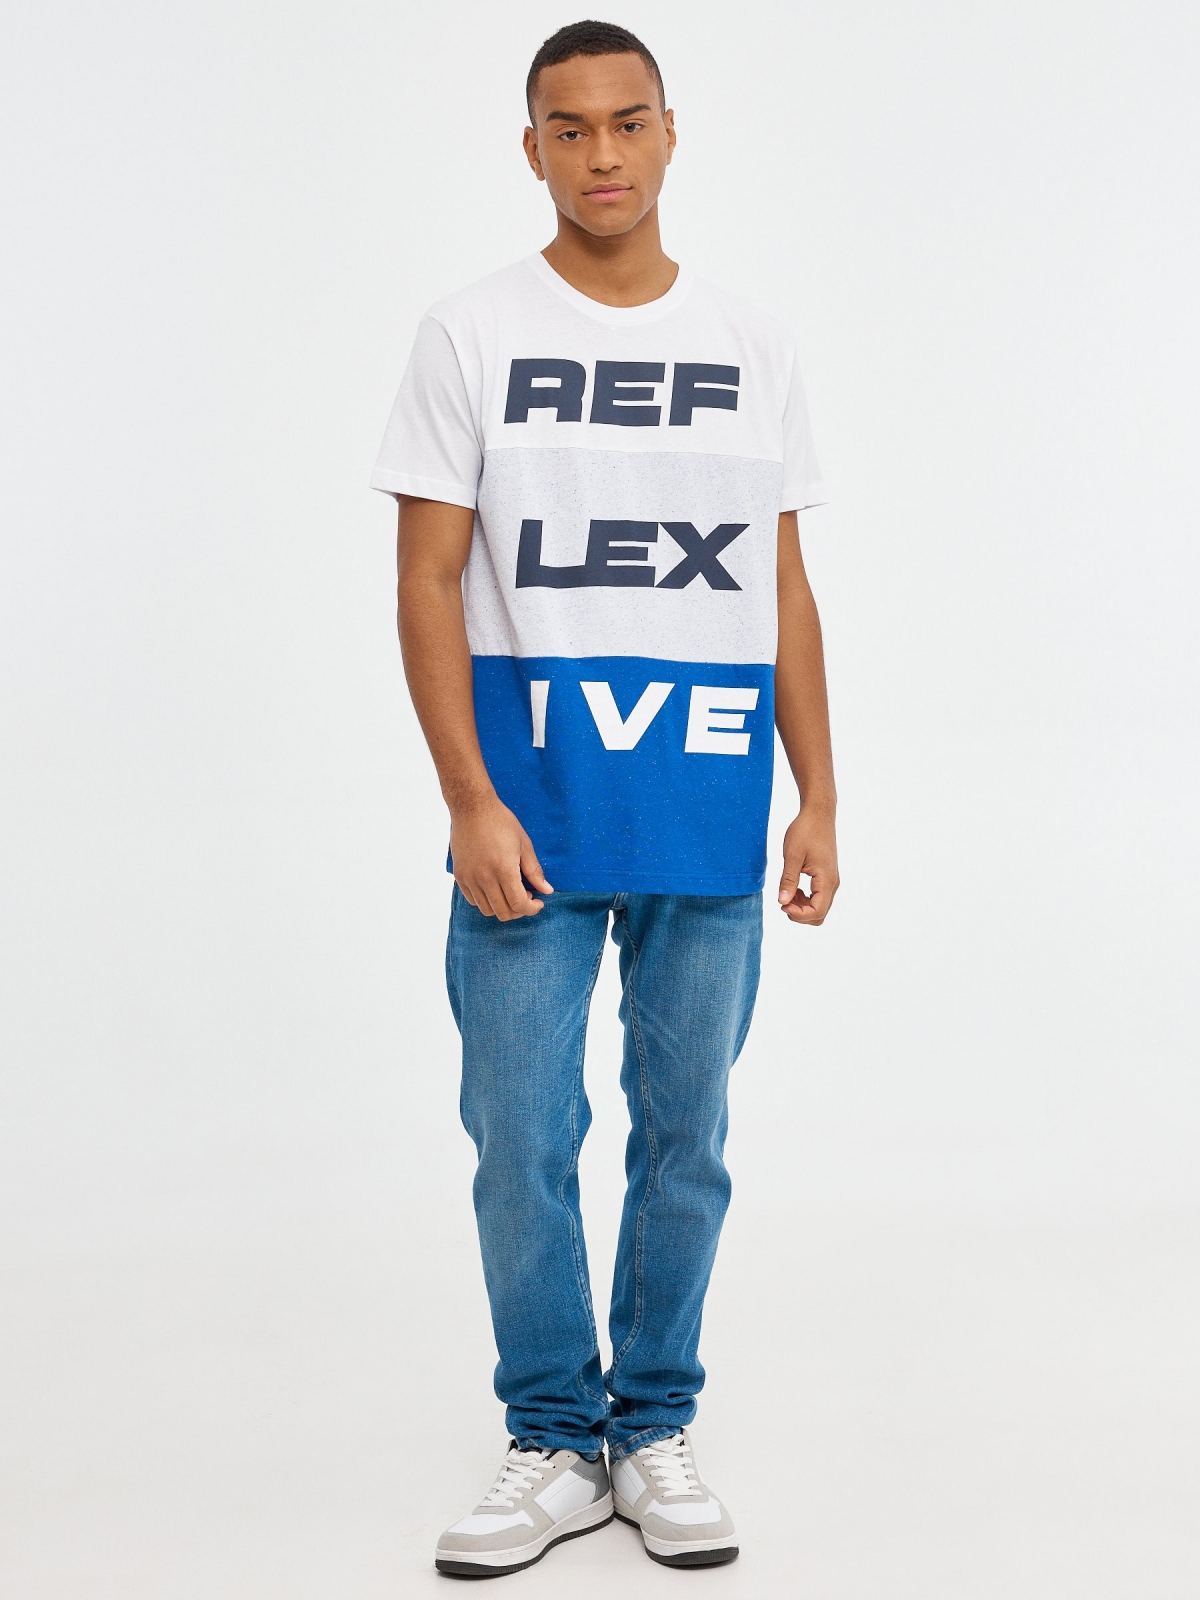 T-shirt REF LEX IVE azul vista geral frontal